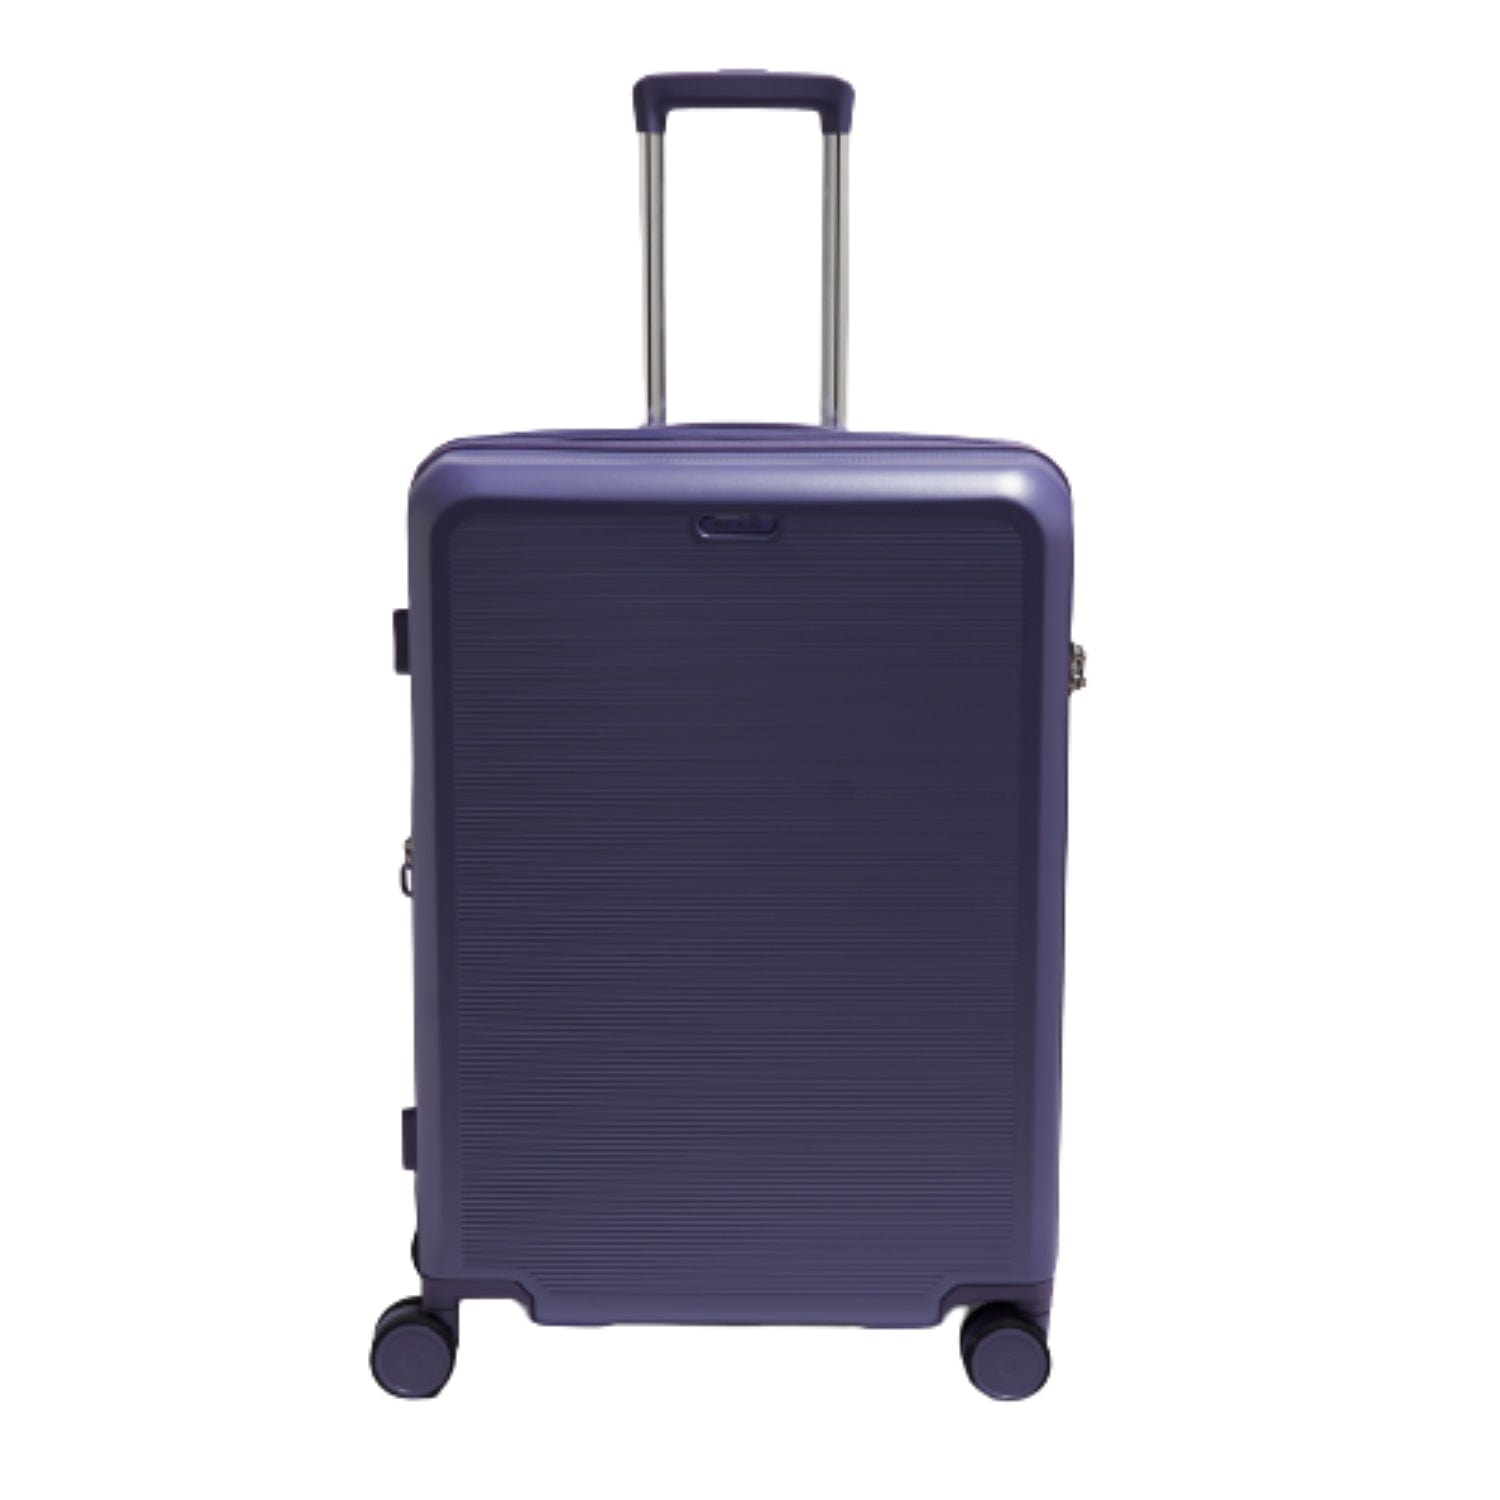 Echolac Sense 56+67+78cm Hardcase Expandable 4 Double Wheel 3 Piece Luggage Trolley Set Purple - CTH0023S -3PC SET PURPLE